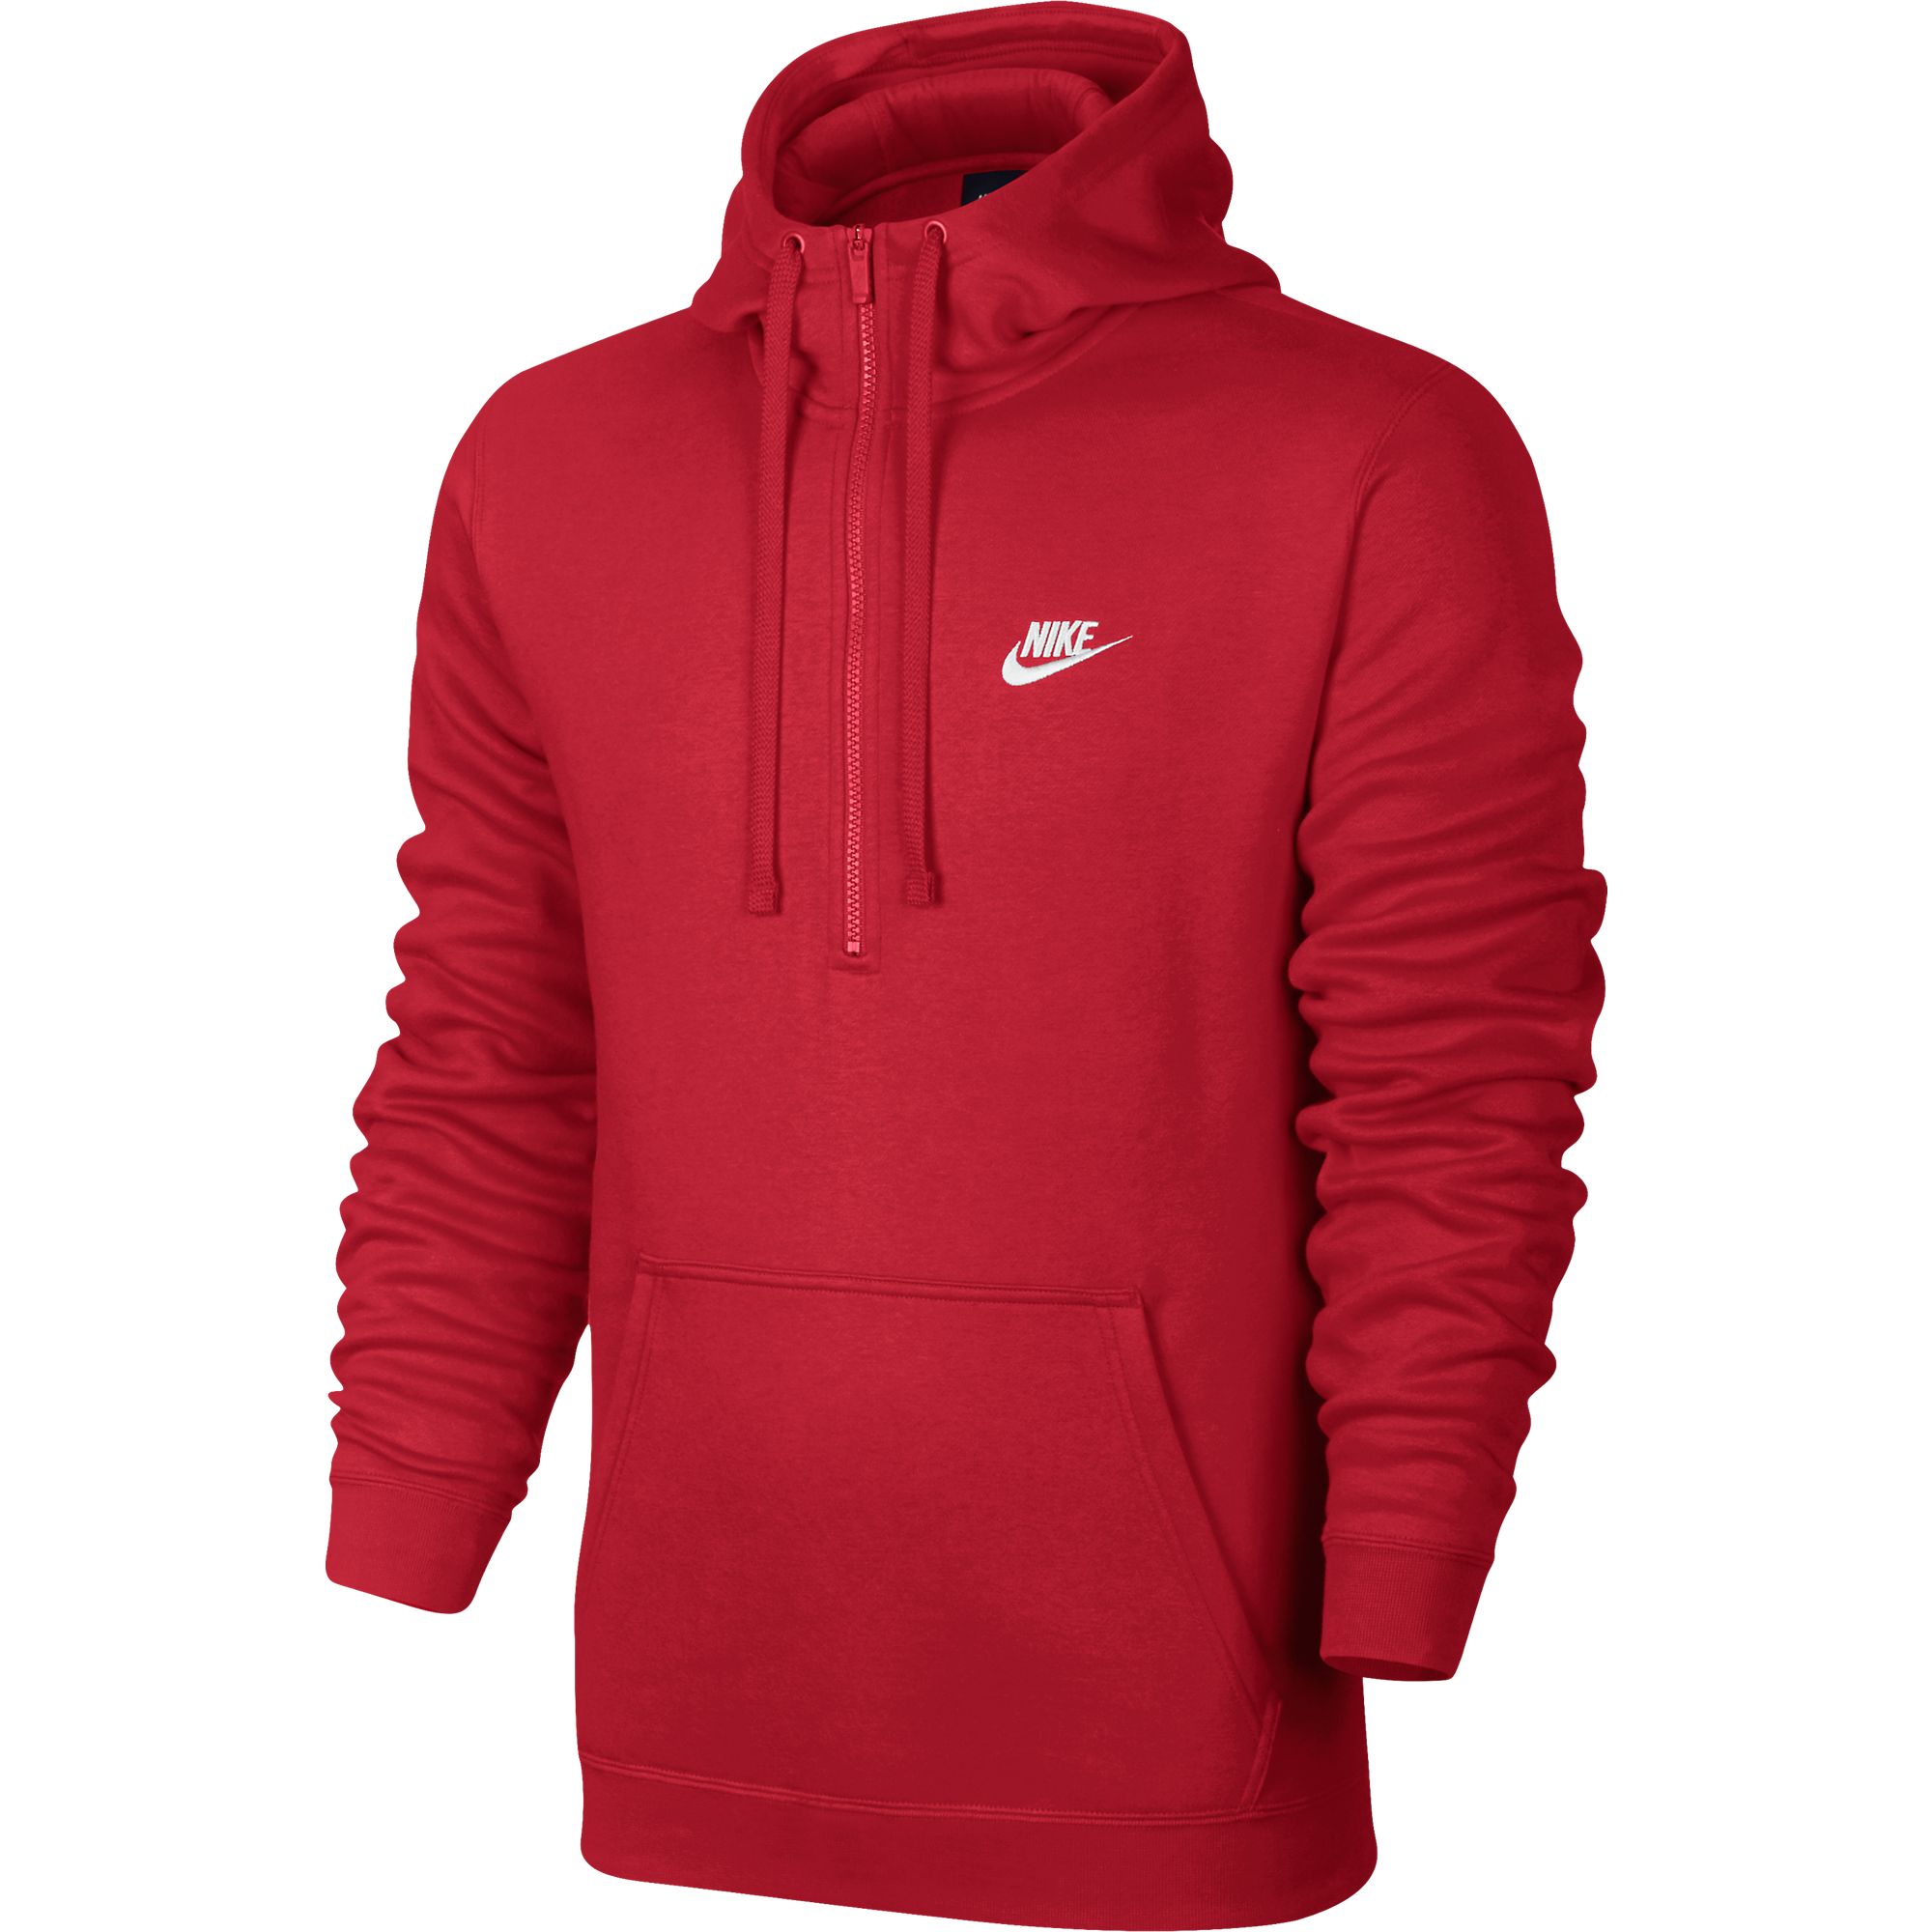 Nike Club Half Zip Longsleeve Men's Hoodie Red/White 812519-657 | eBay